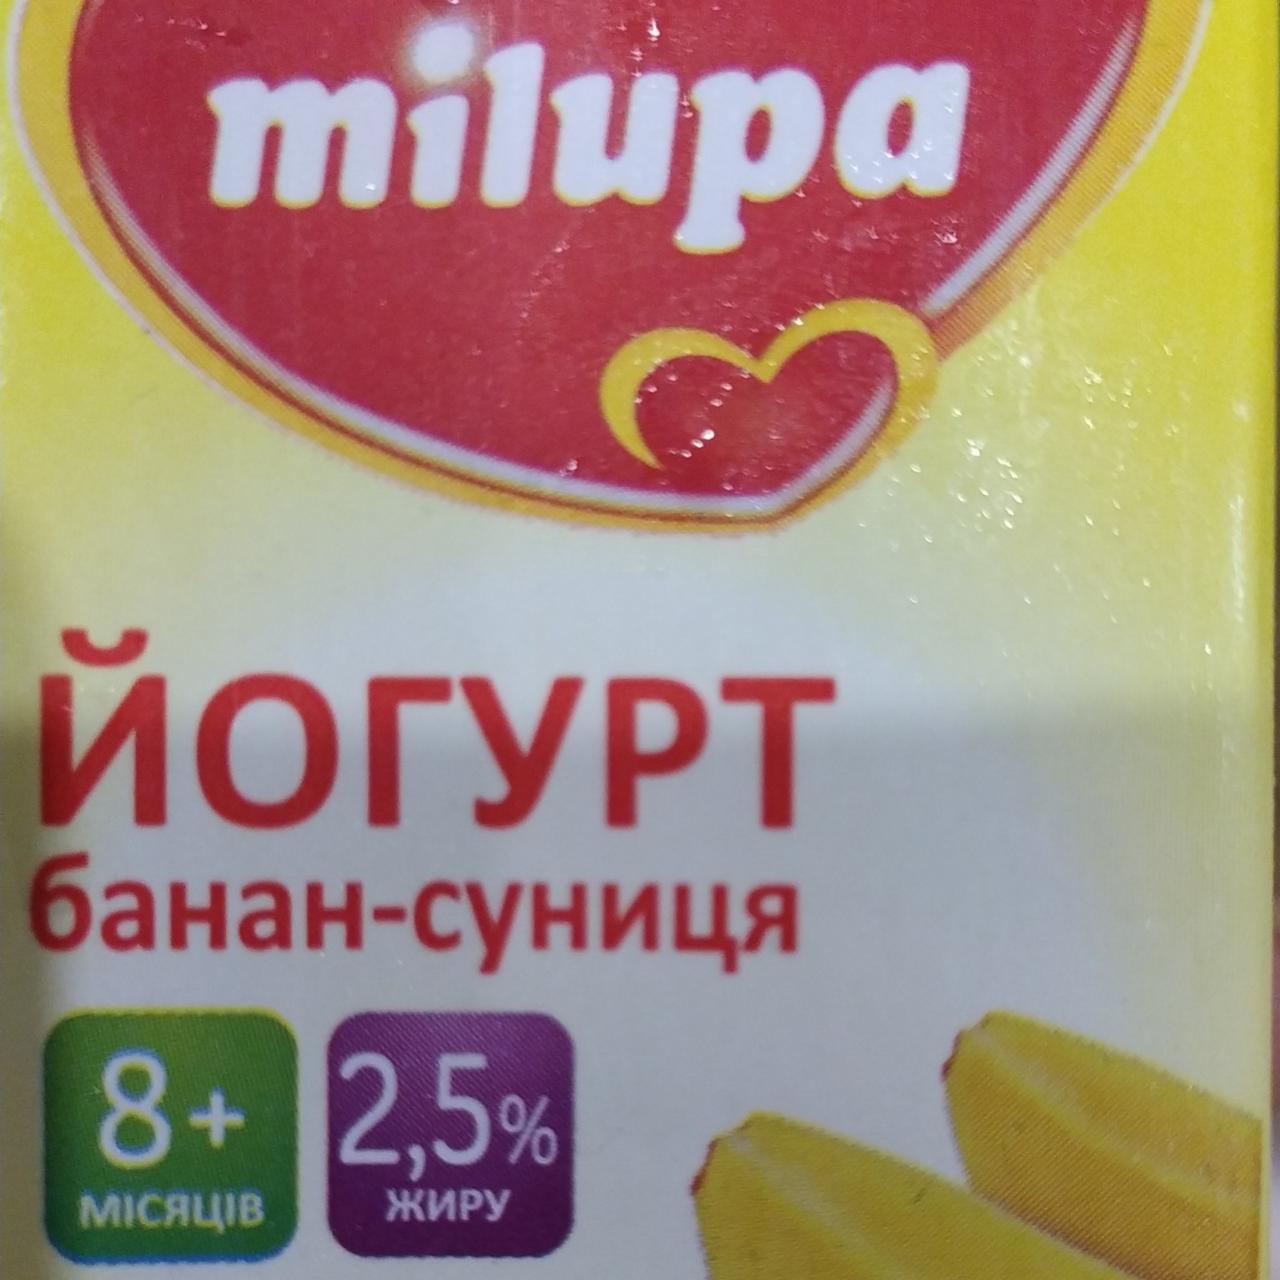 Фото - Йогурт 2.5% банан-земляника Milupa